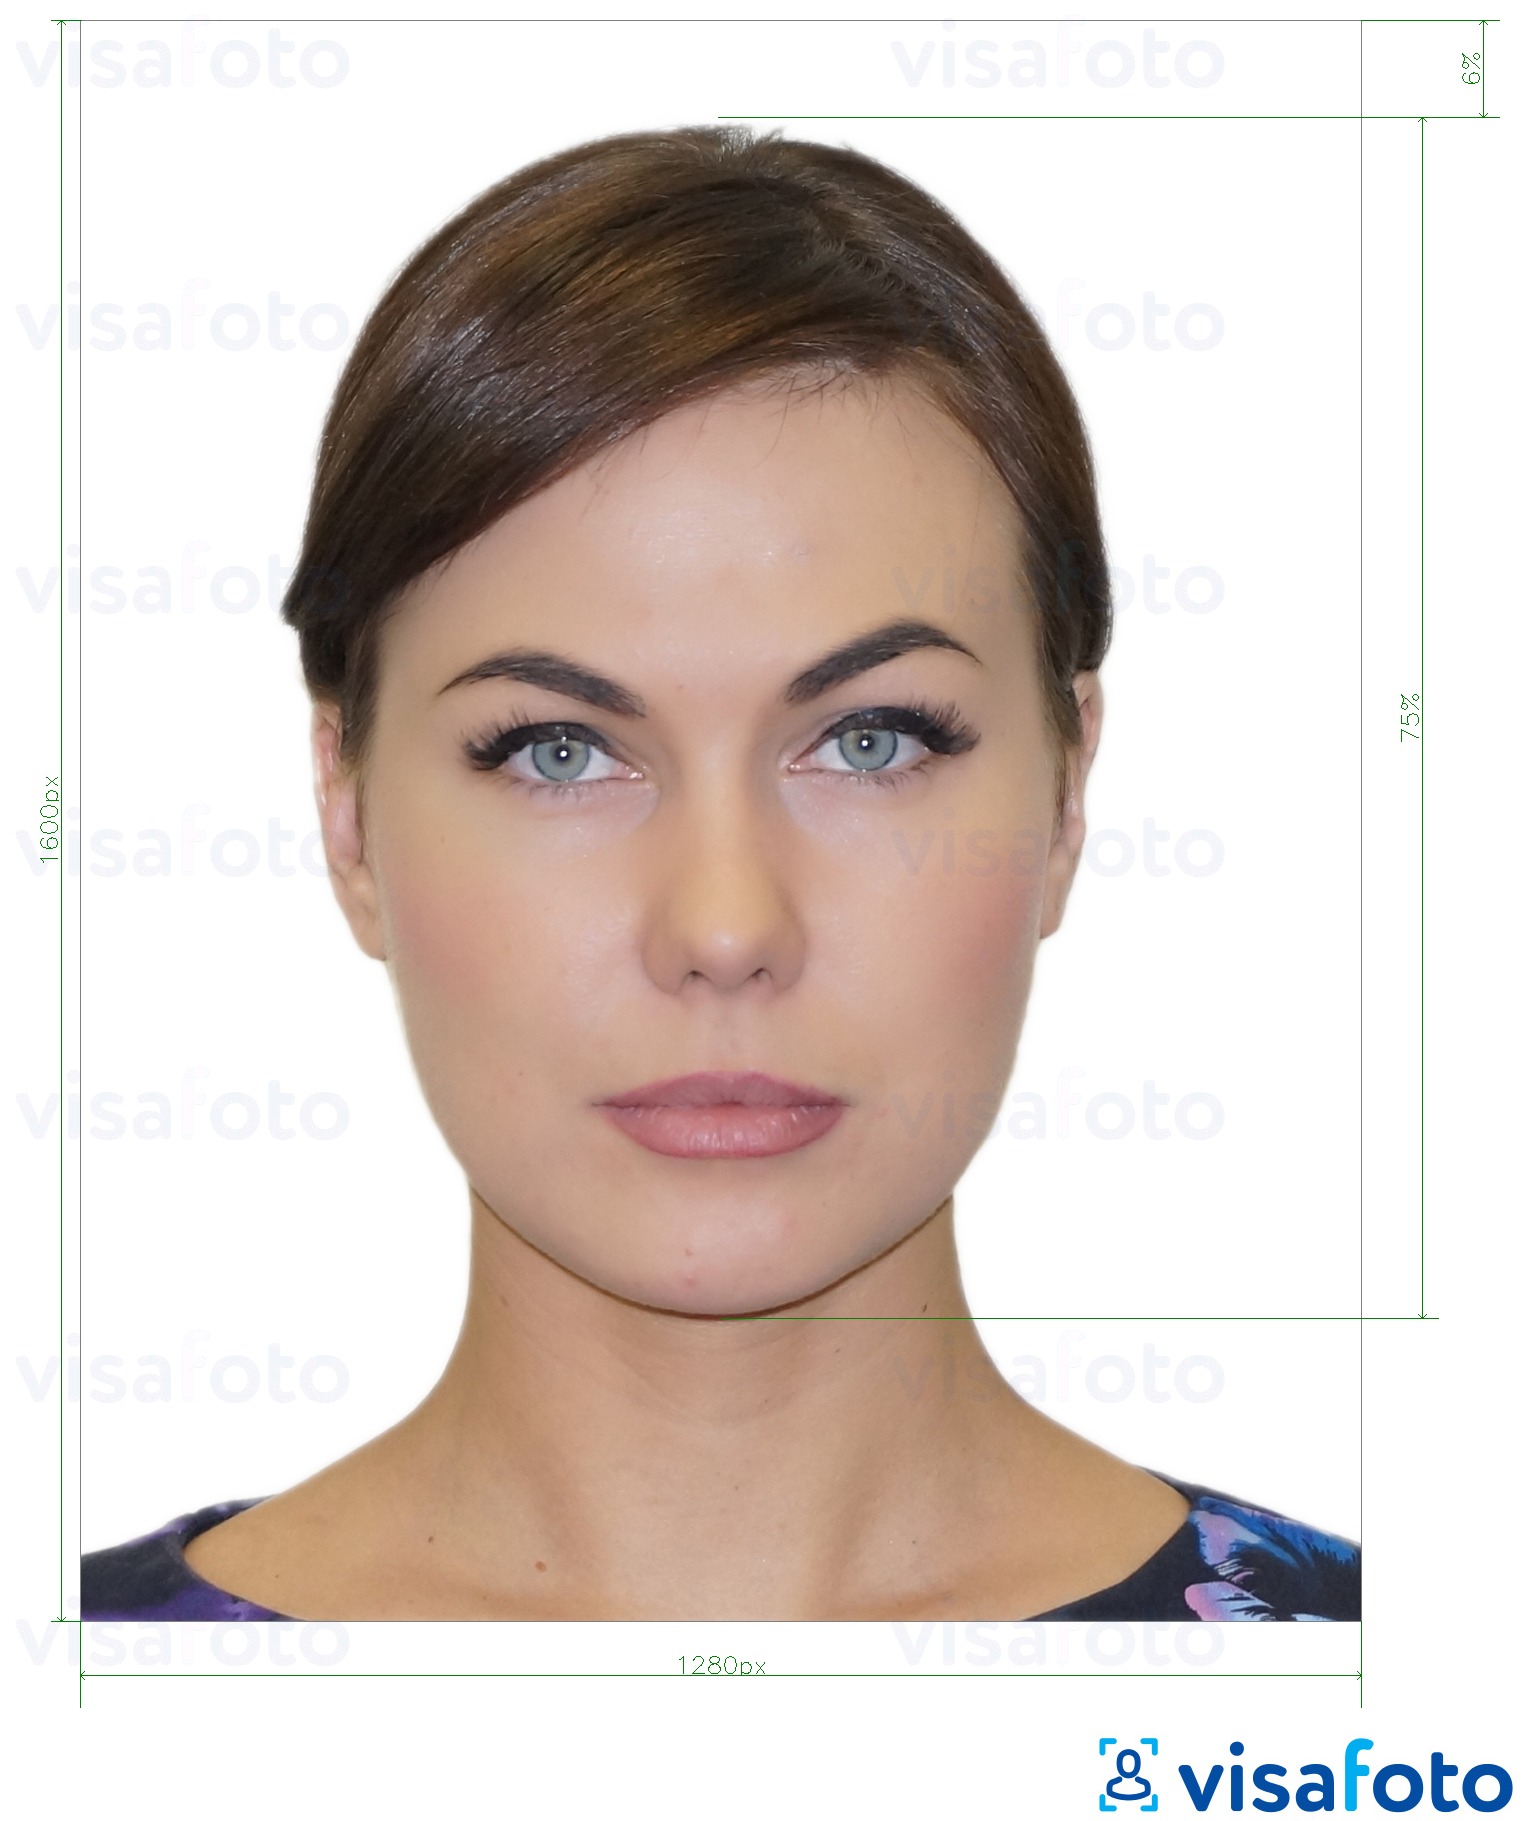 Приклад фотографії для Греція водійські права 1280x1600 пікселів з точними специфікаціями розміру